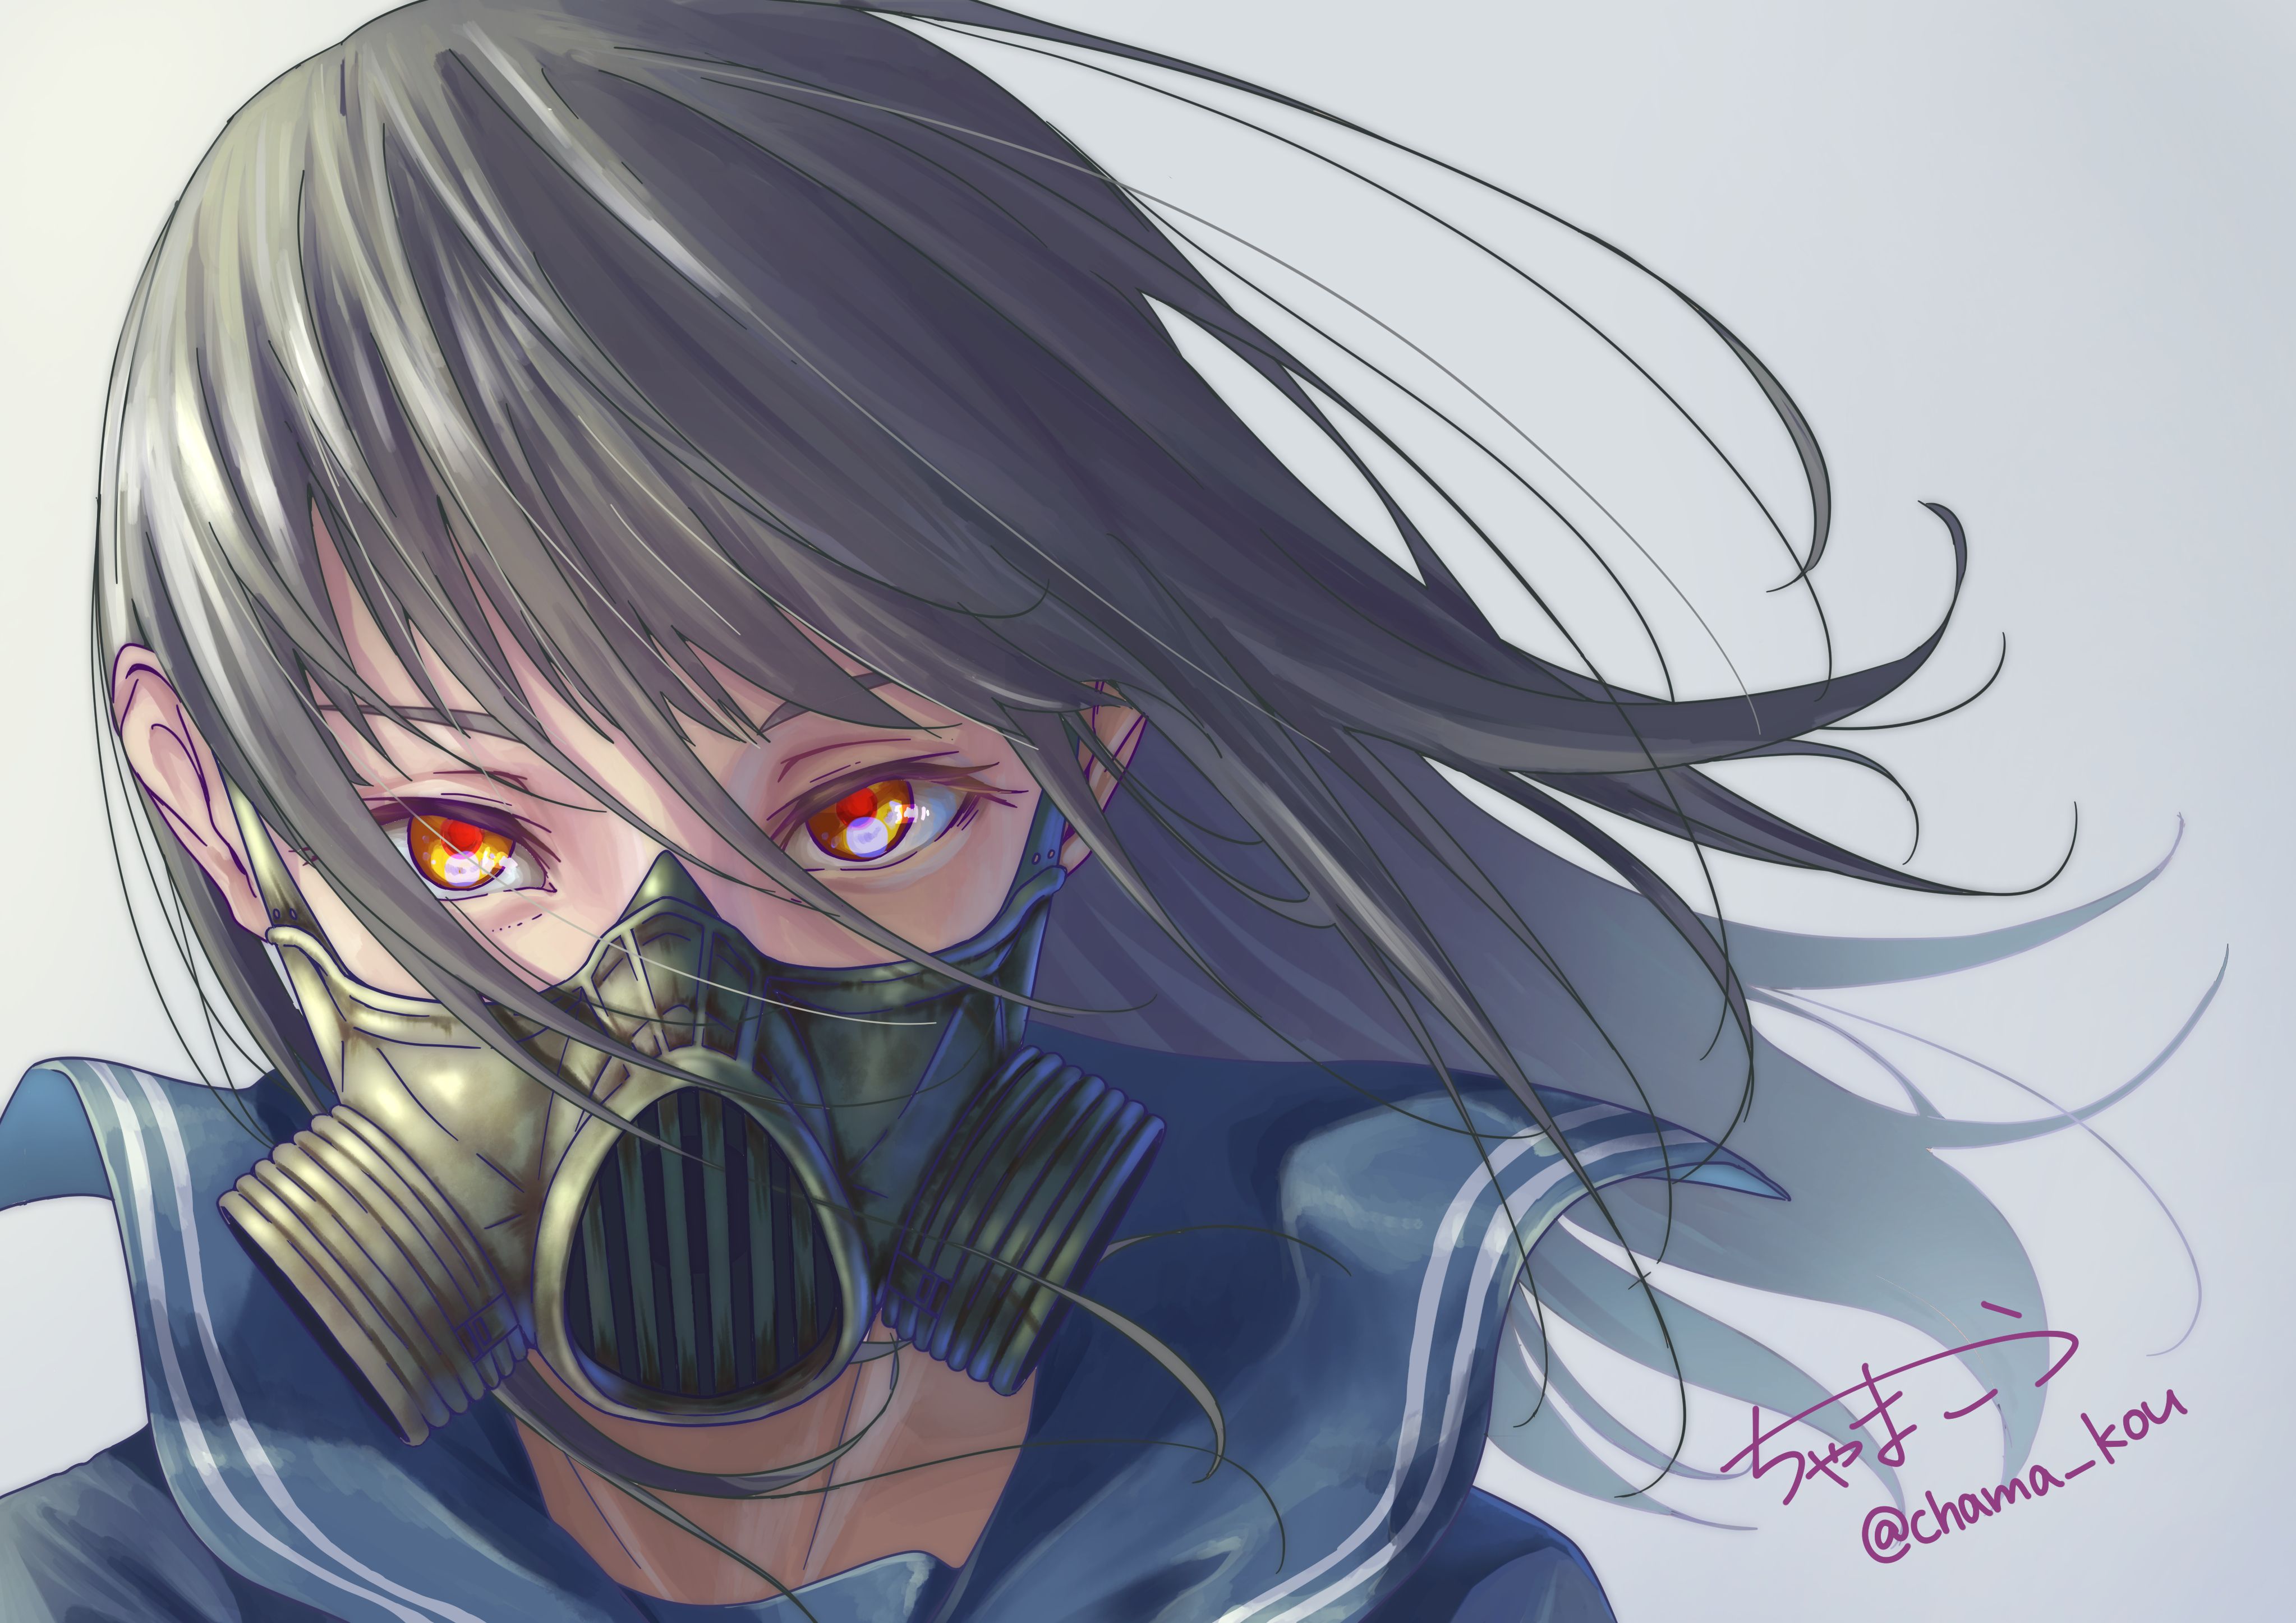 Materi Pelajaran 8: Anime Mask Girl